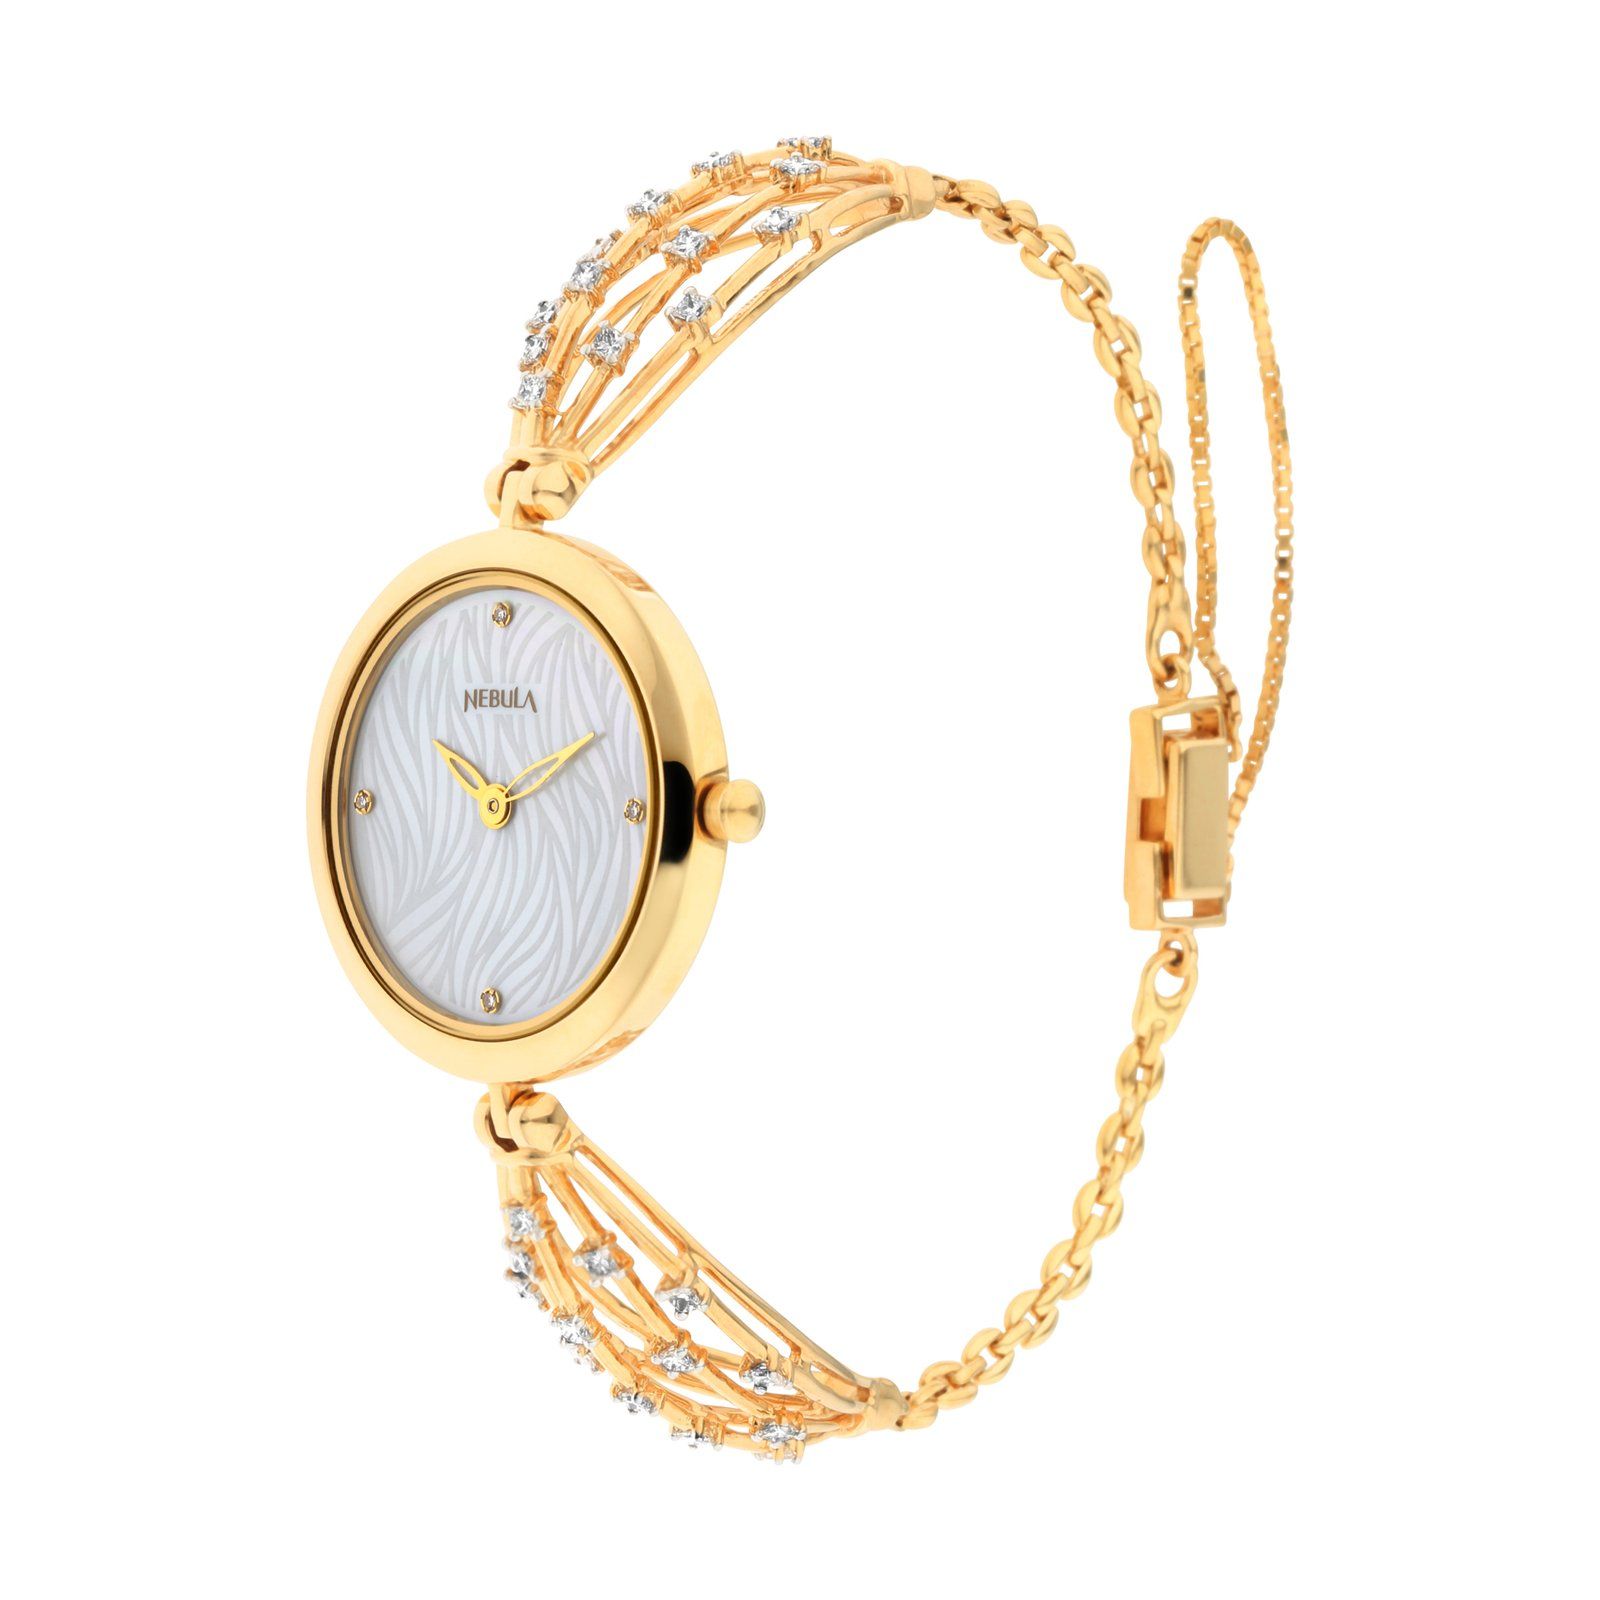 Ahilya by Nebula - 18K solid gold watch with a diamond-studded bracelet